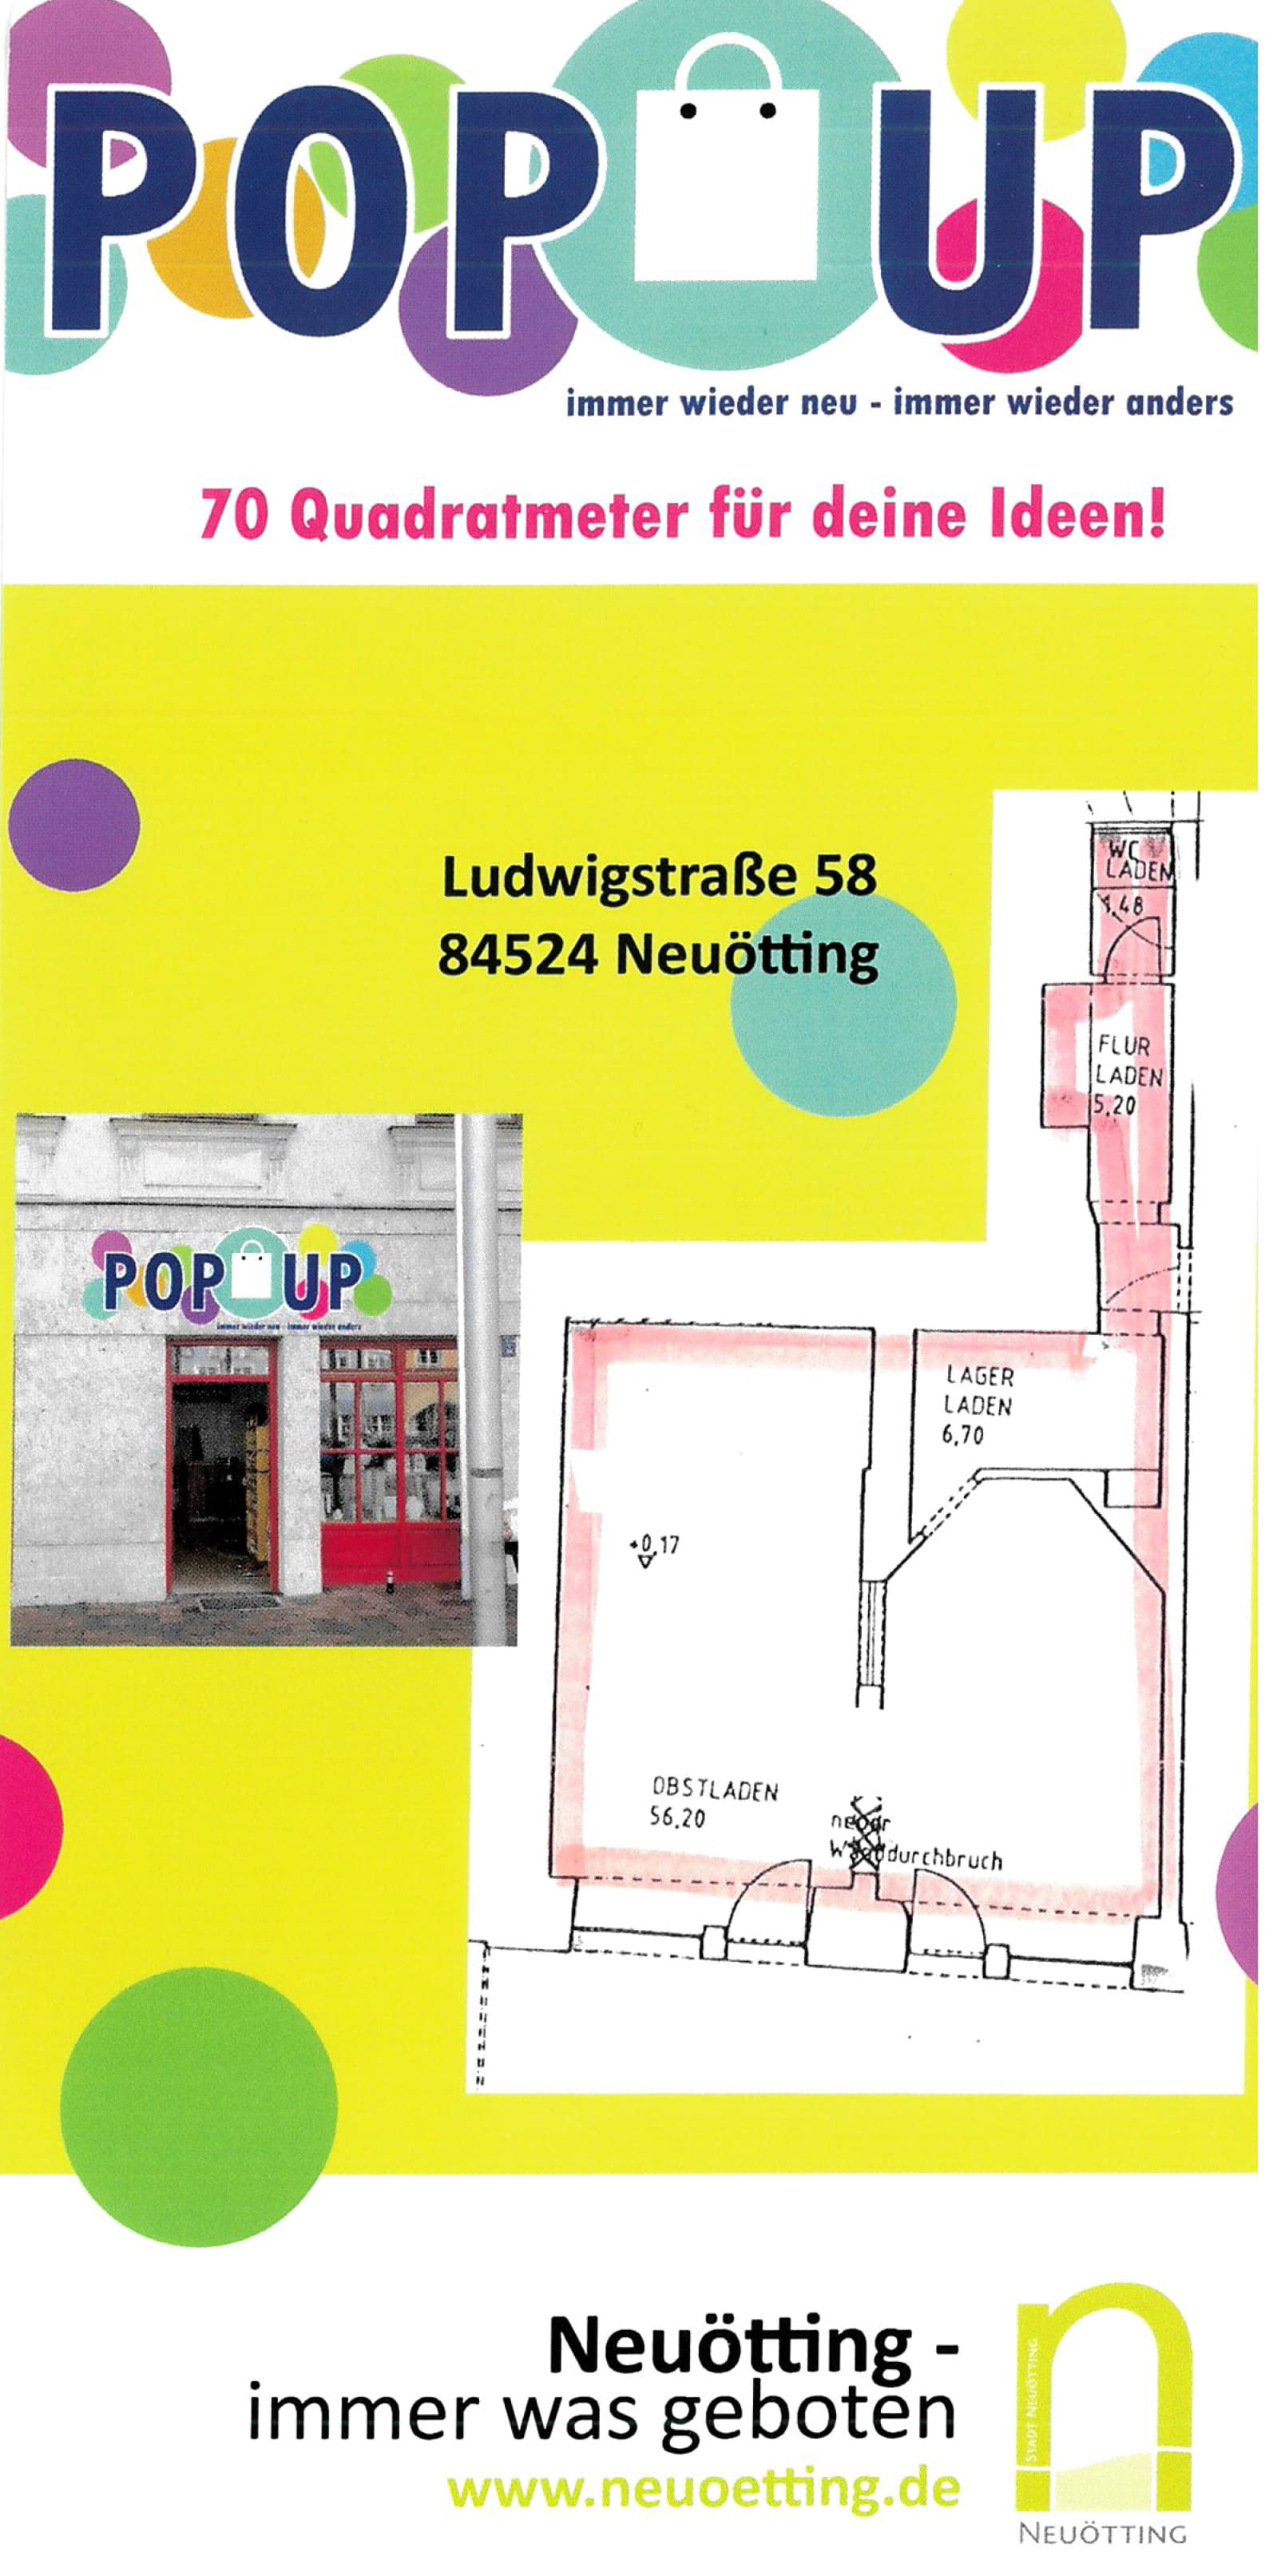 „Neu! Der PopUp-Laden in Neuötting – eine Chance für Gründer, Start-Ups und Ausprobierer